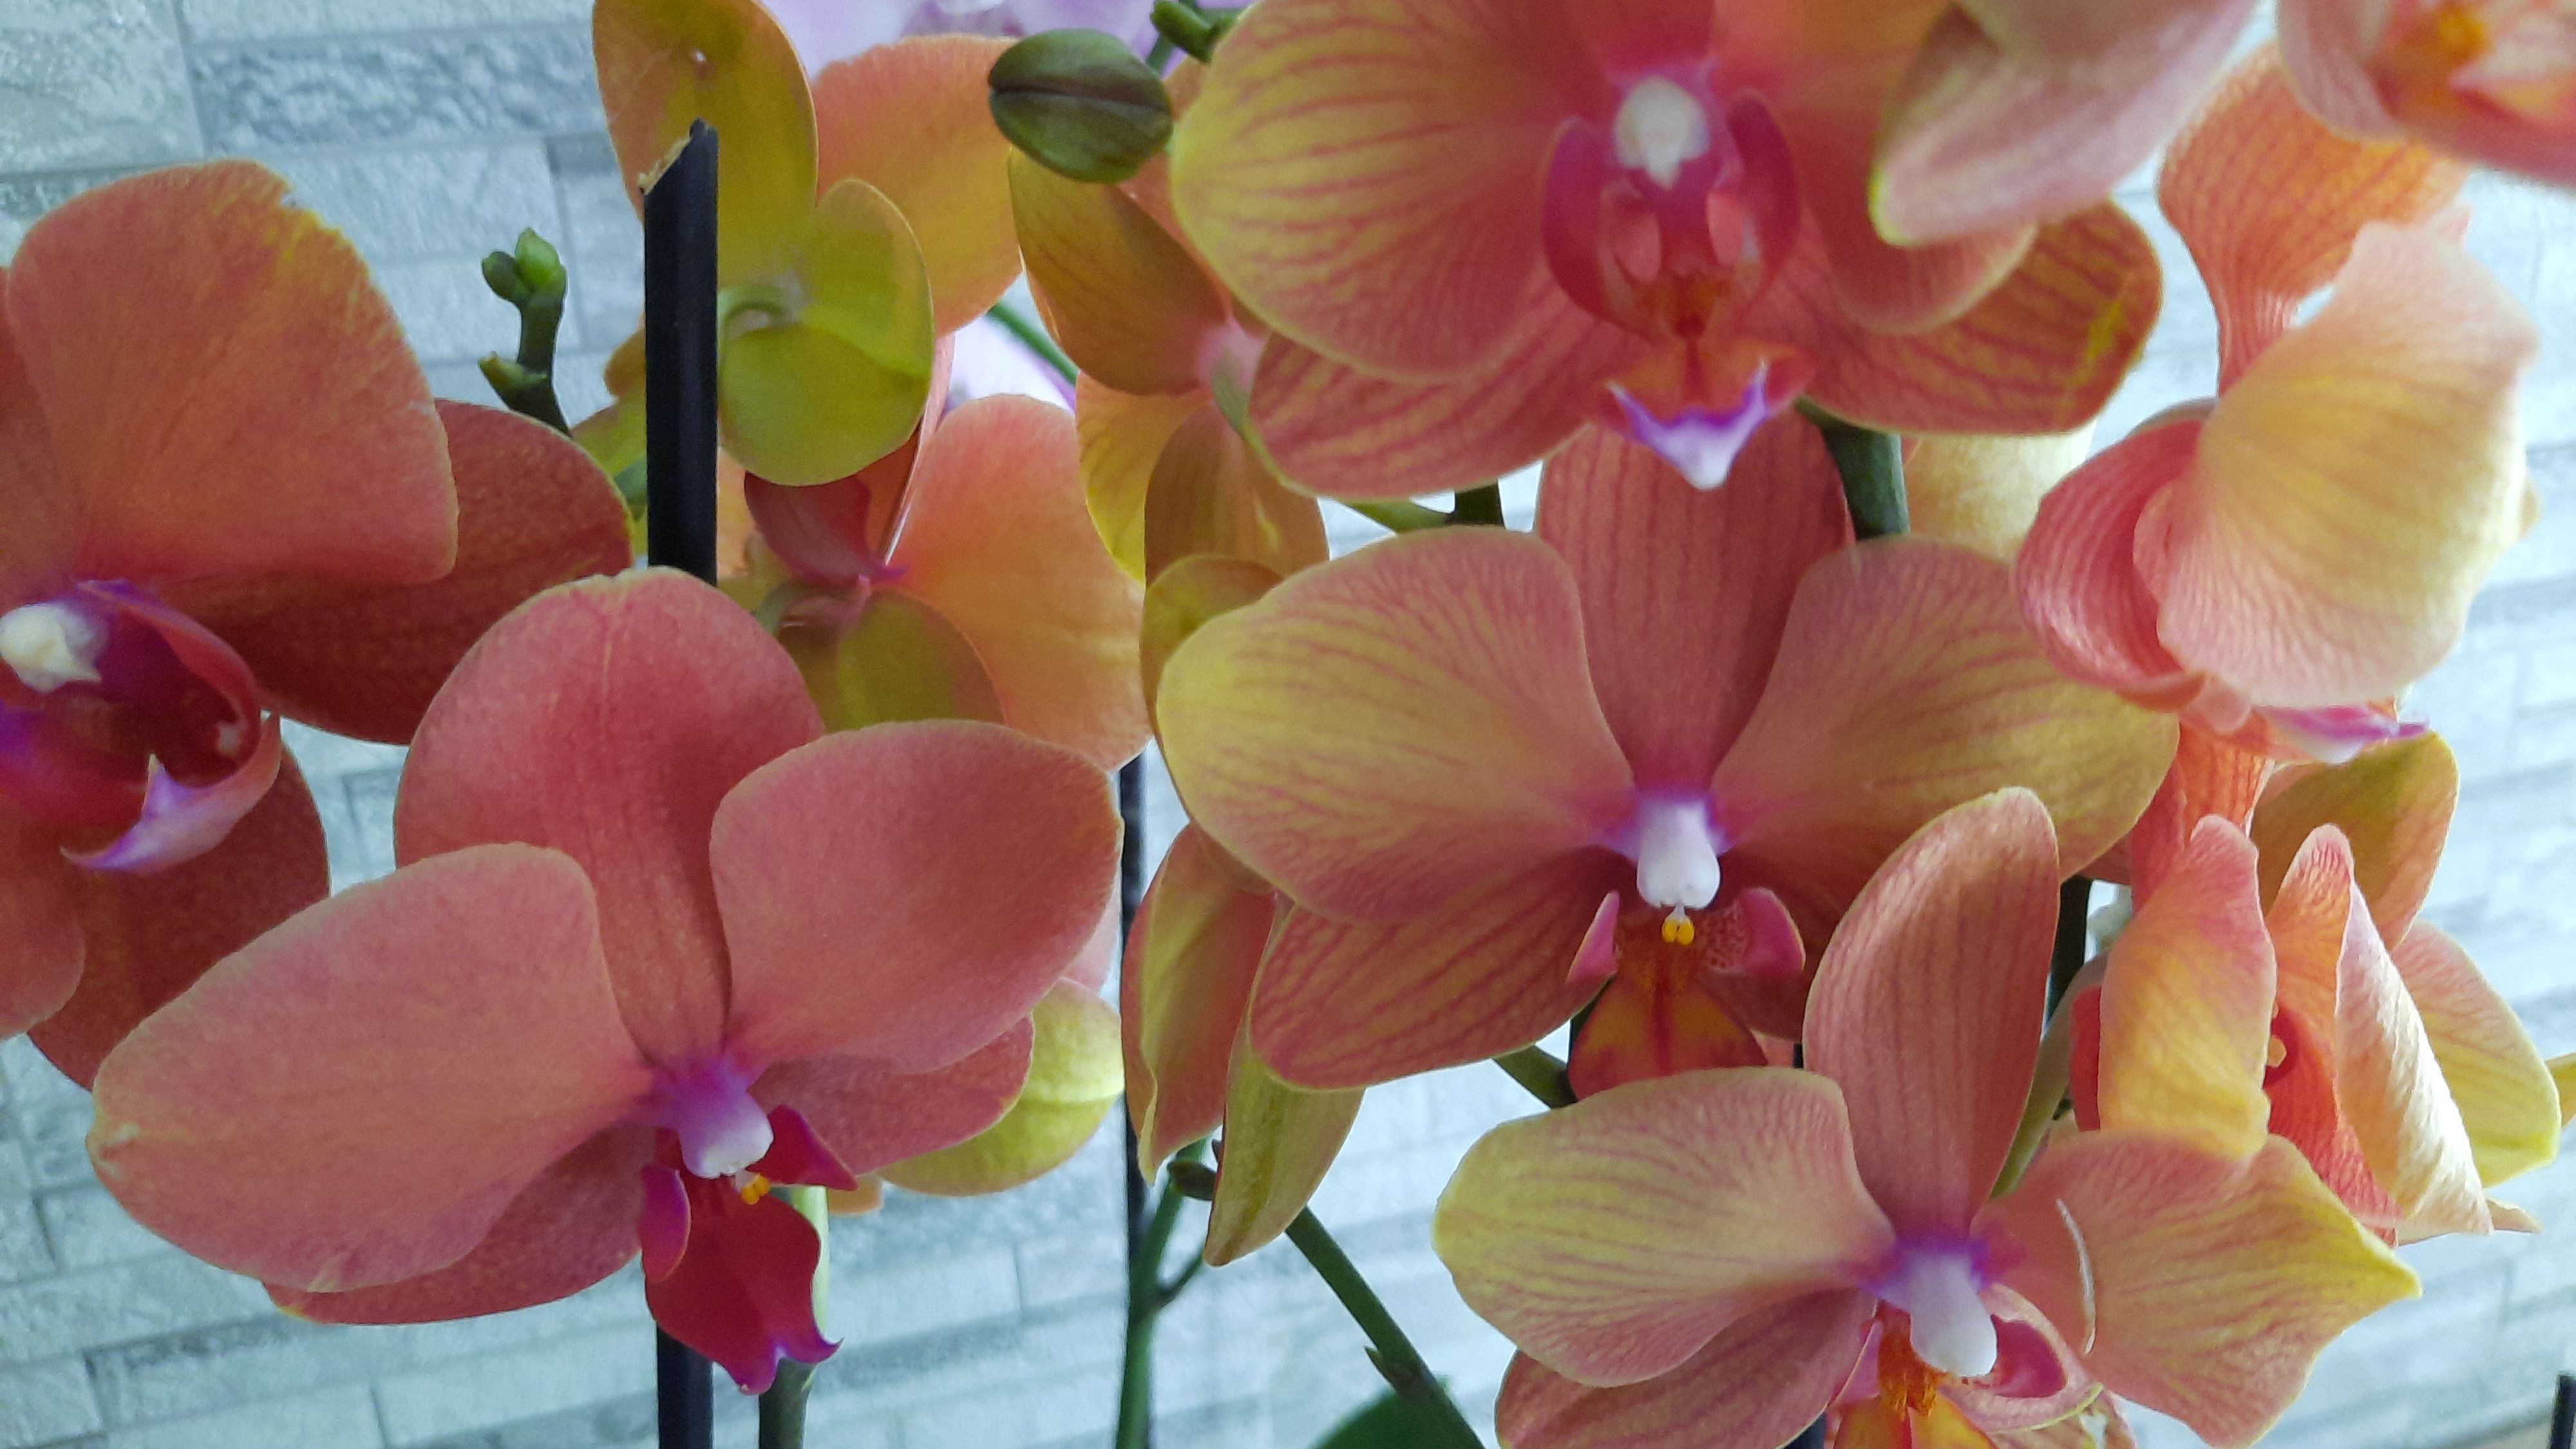 Купить орхидею в орле